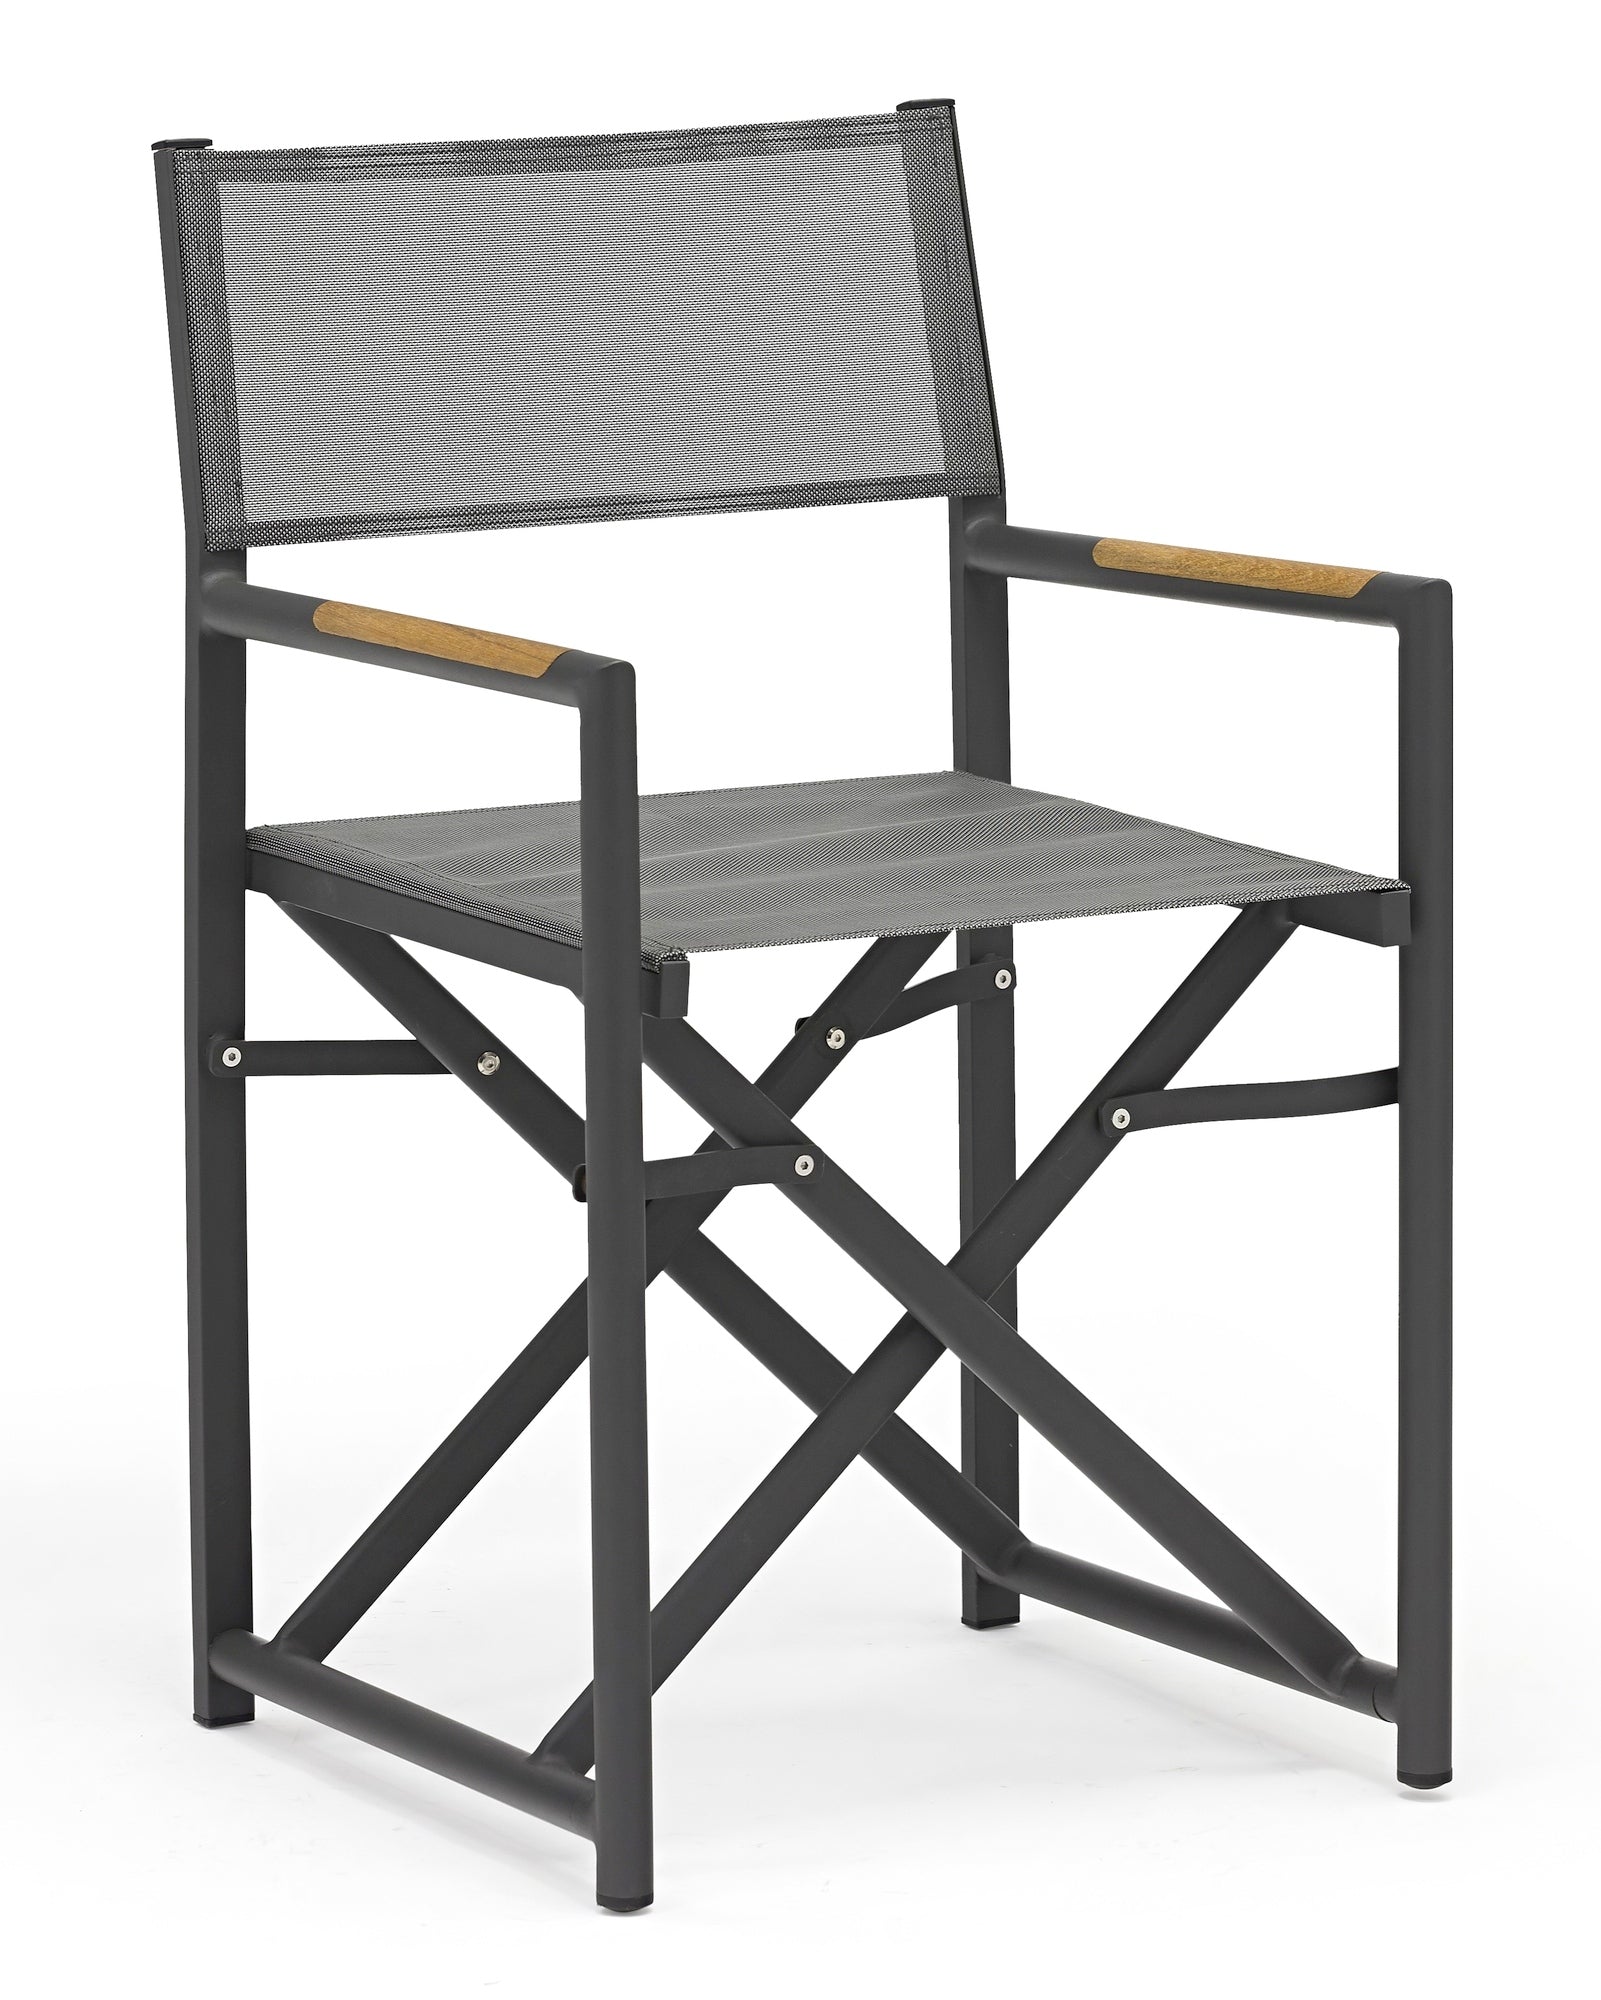 Anthrazitfarbener Polly Garten-Regie-Stuhl mit grauer Textilenbespannung und Teakholz-Armstützen, leicht faltbar und langlebig, erhältlich bei Gartenmöbelshop.at.